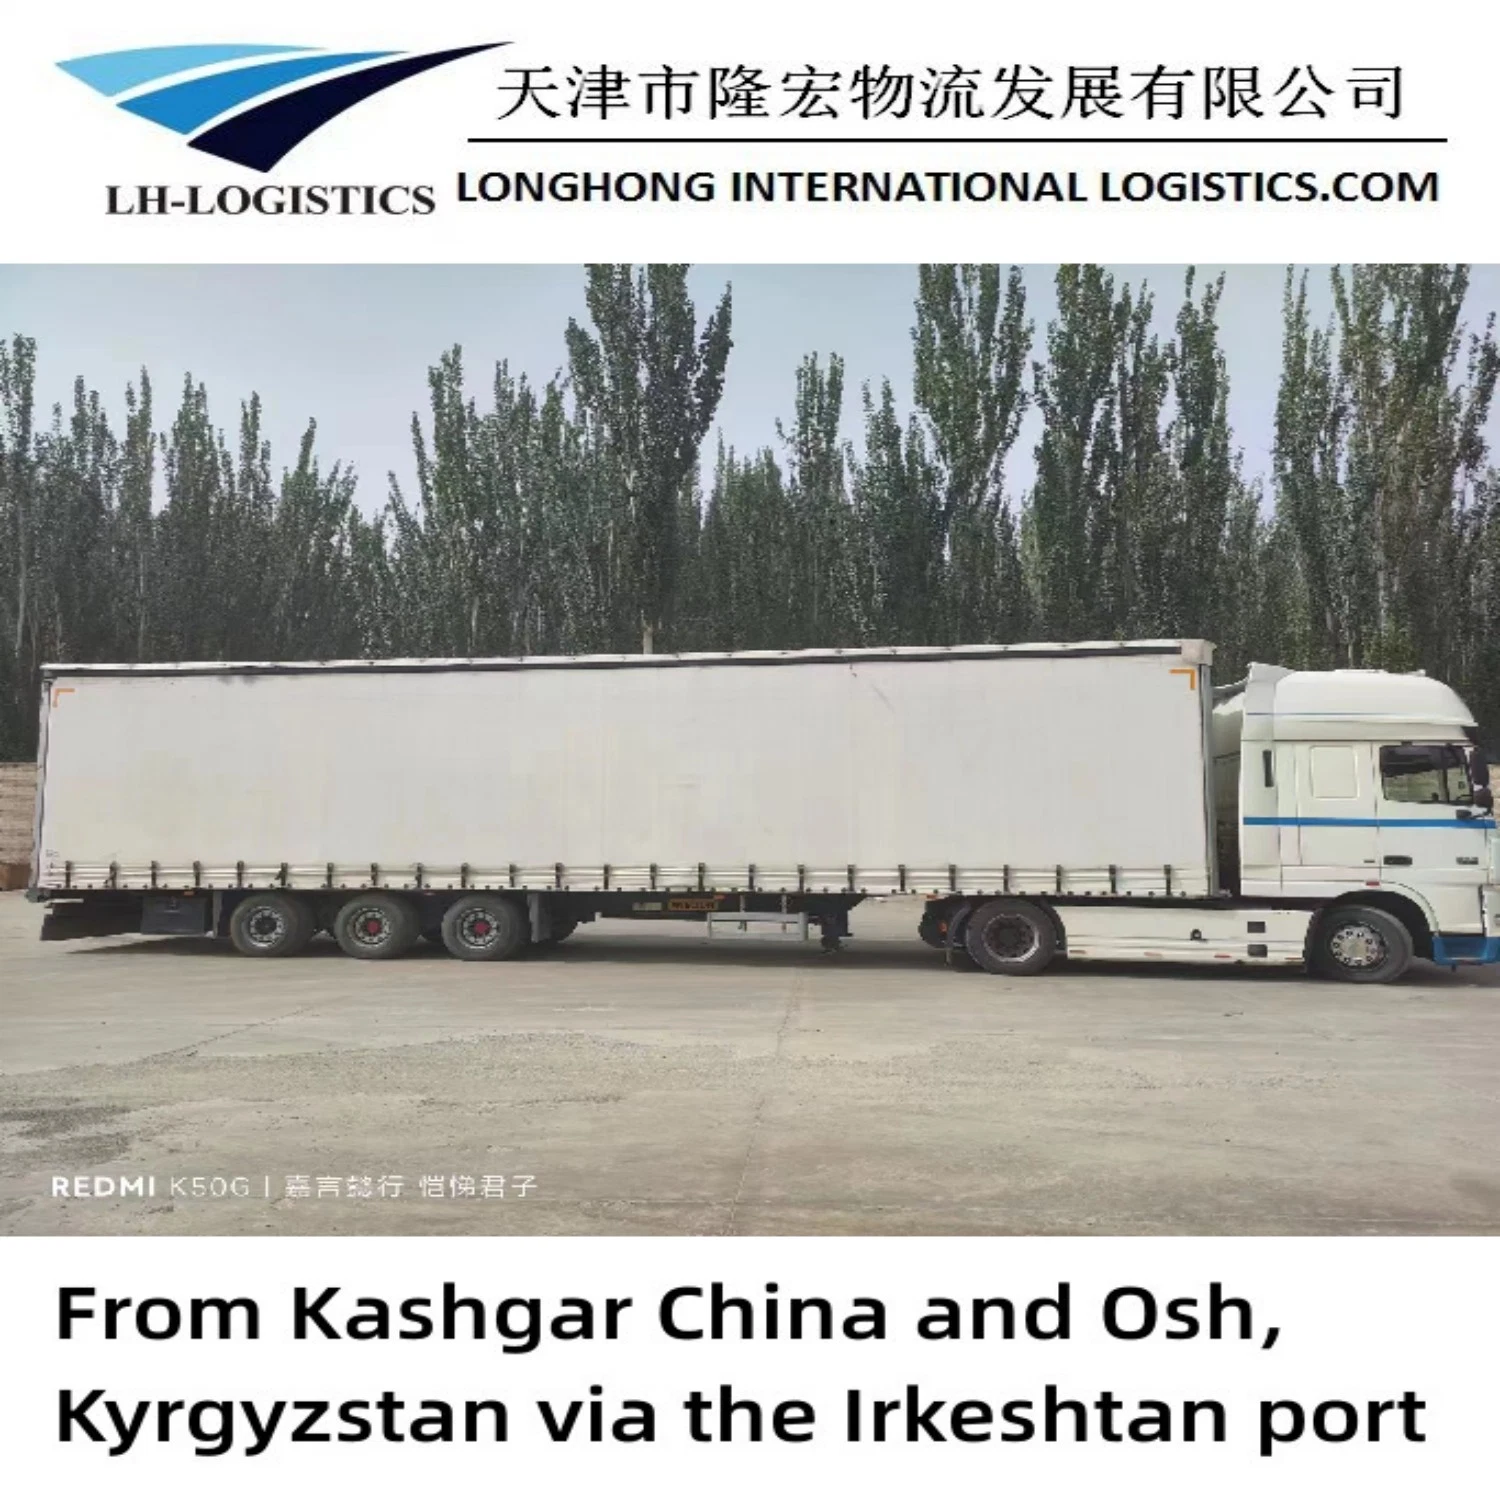 Transporte por carretera de contenedores o carga a granel, Tayikistán, Kazajstán, Kirguistán